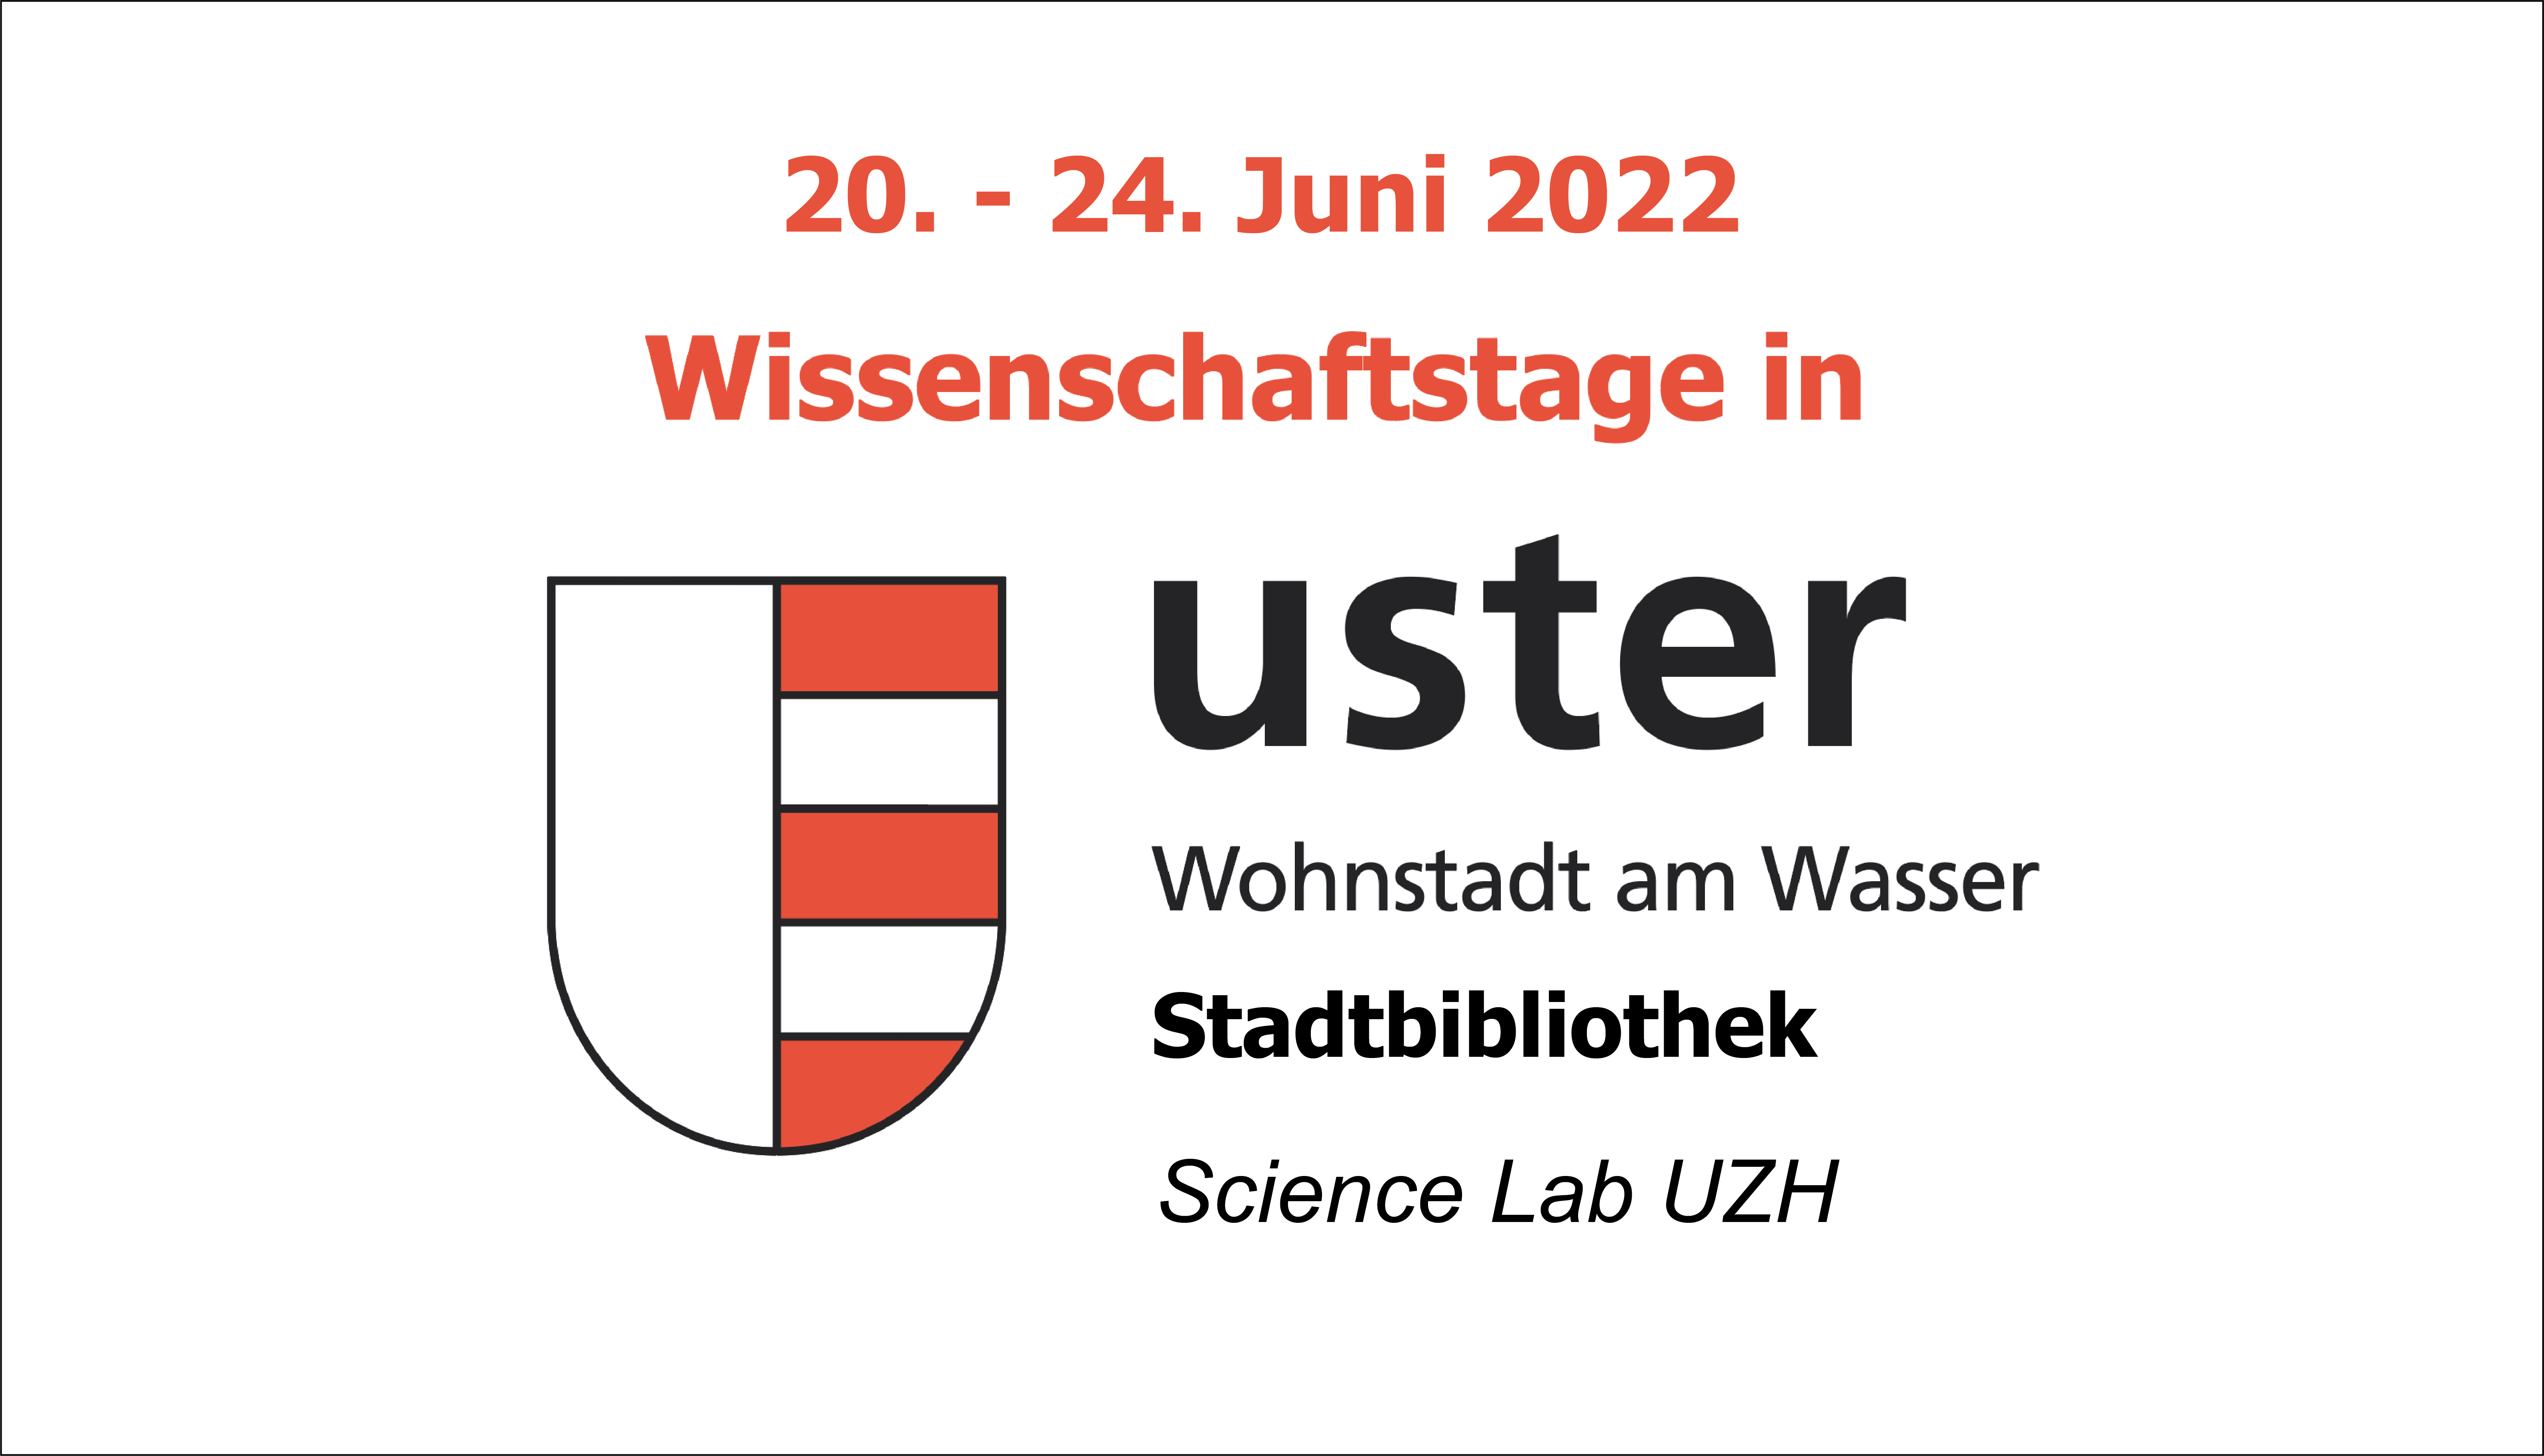 20. - 24. Juni 2022 Wissenschaftstage in der Stadtbibliothek Uster, Wohnstadt am Wasser. Stadtbibliothek und Science Lab UZH